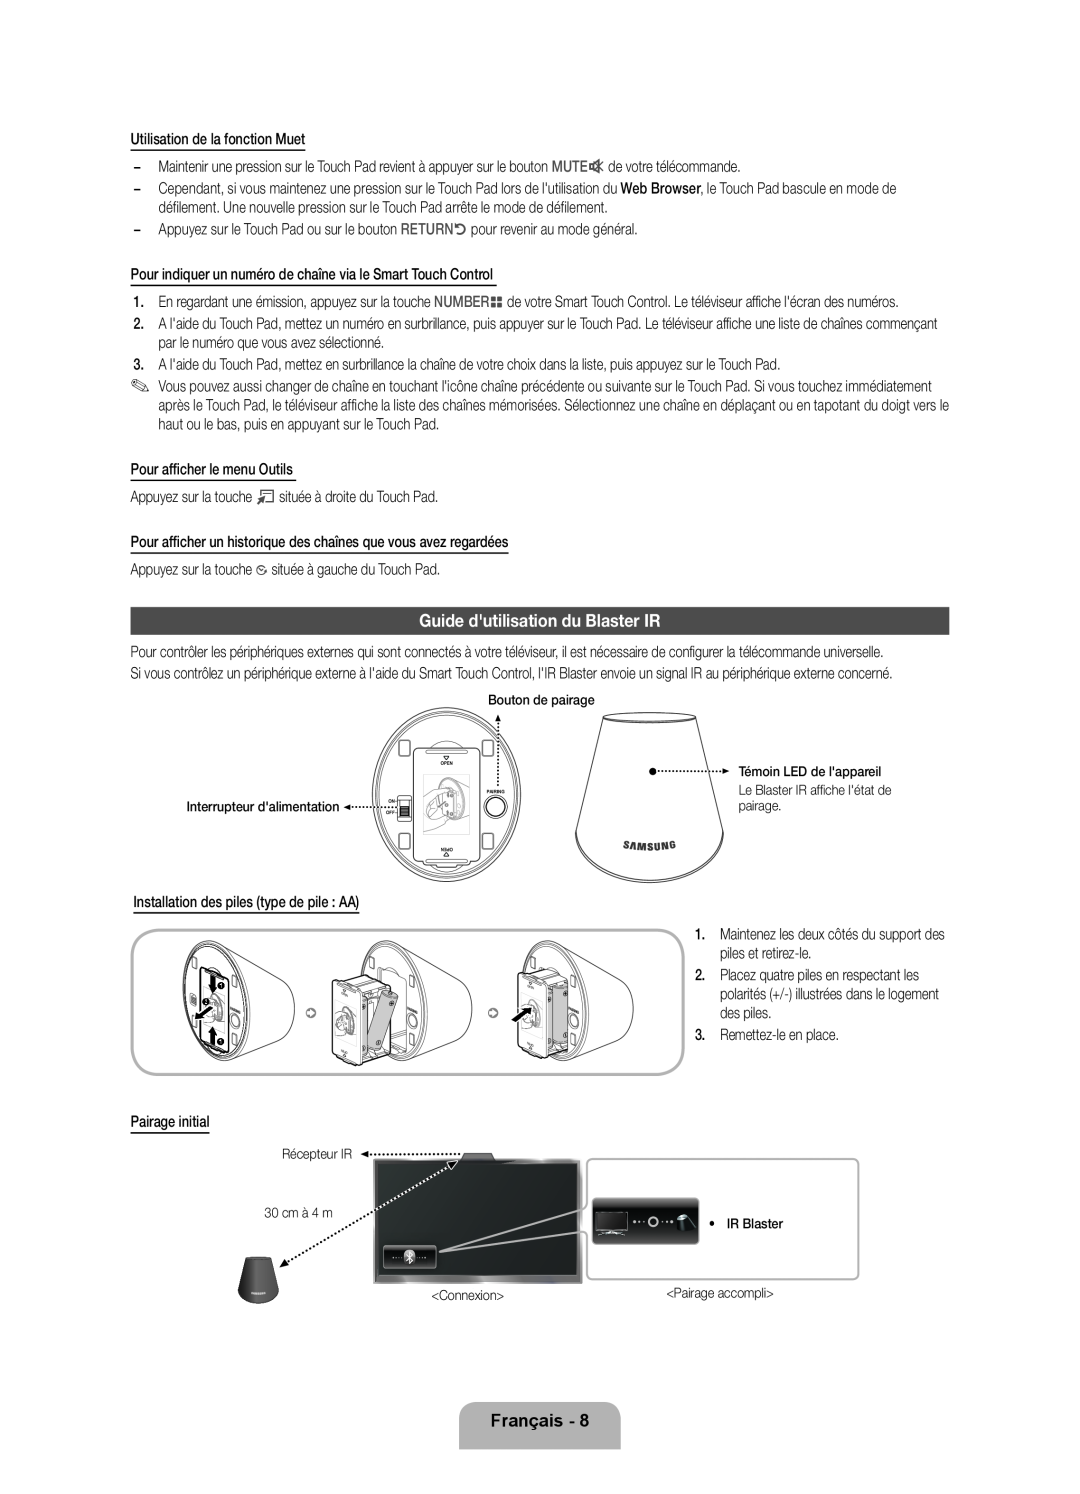 Samsung UE40ES7000SXZF, UE46D7090LSXZG manual Guide dutilisation du Blaster IR, Français, Interrupteur dalimentation 